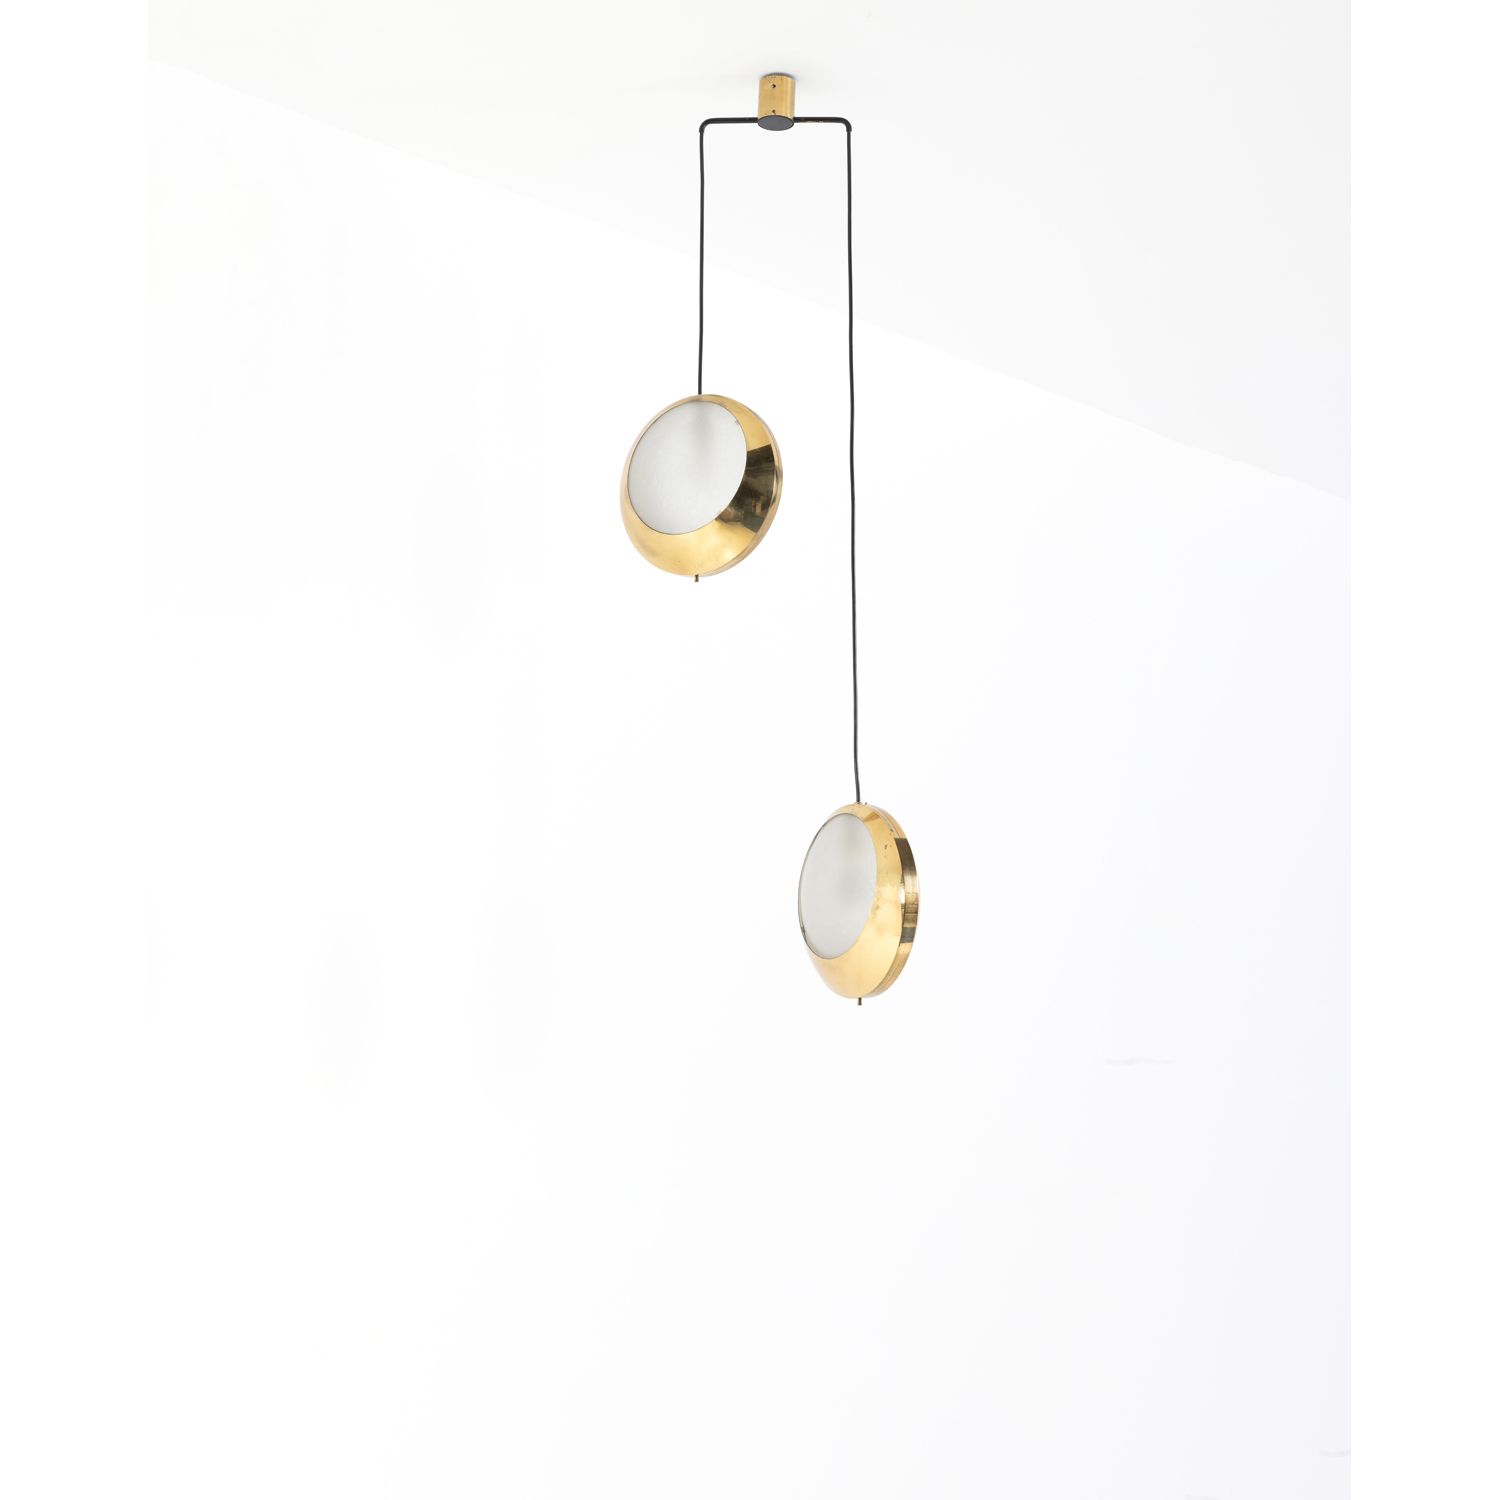 Null 斯蒂尔诺沃 (20岁)

吊灯

黄铜和喷砂玻璃

斯蒂尔诺沃版

创建于1950年代的模型

高（可调）150 × Ø（反射器）32厘米